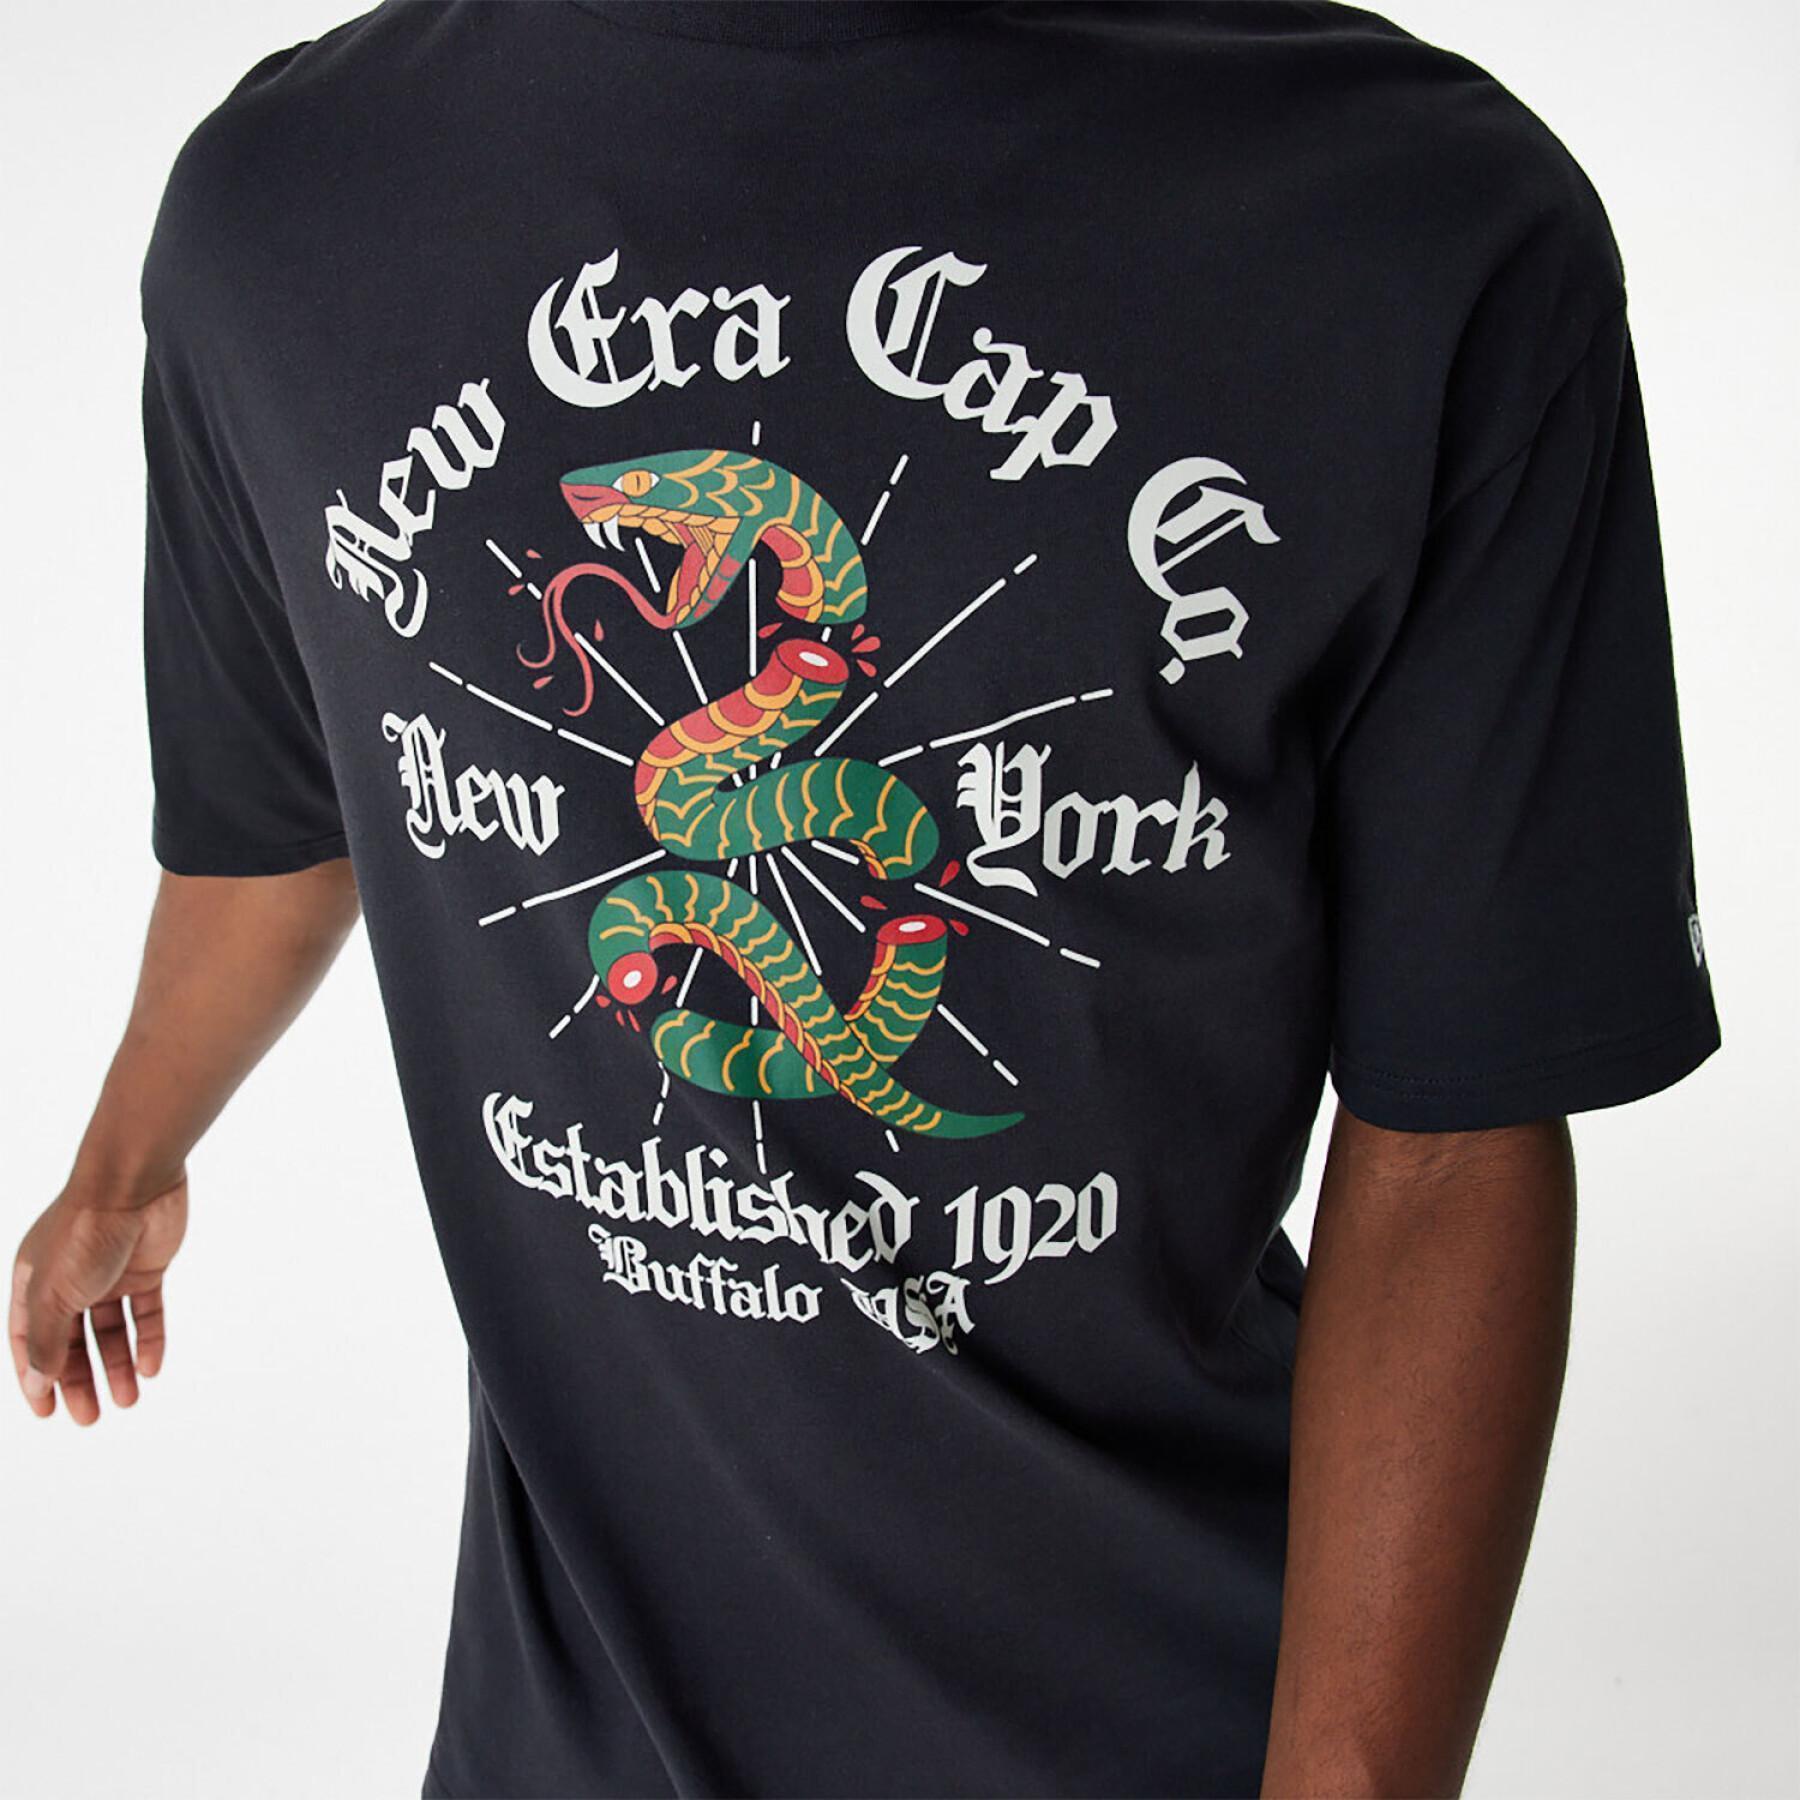 T-shirt oversize graphic Serpent New Era